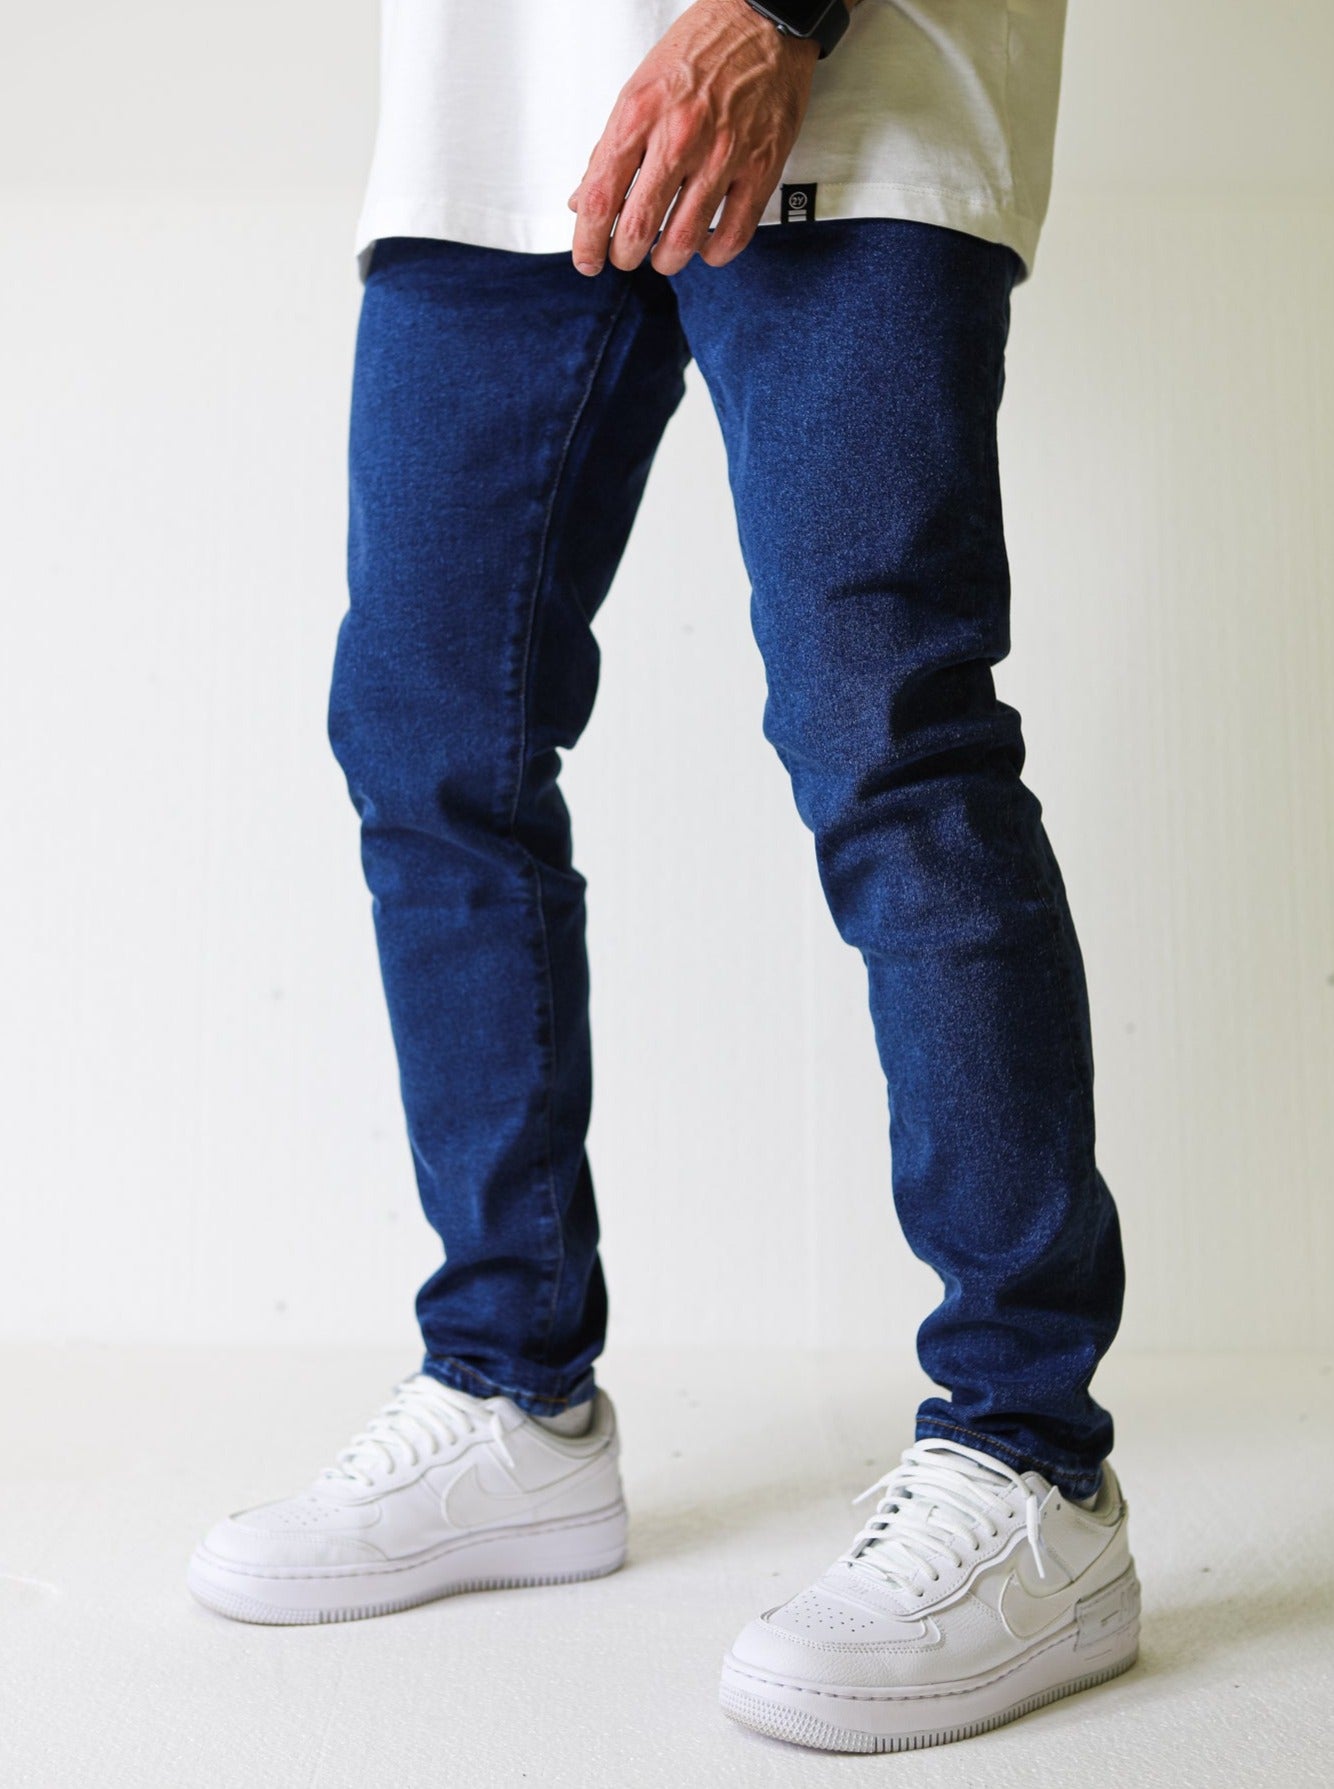 Premium Basic Indigo Blue Essential Jeans - UNEFFECTED STUDIOS® - JEANS - UNEFFECTED STUDIOS®